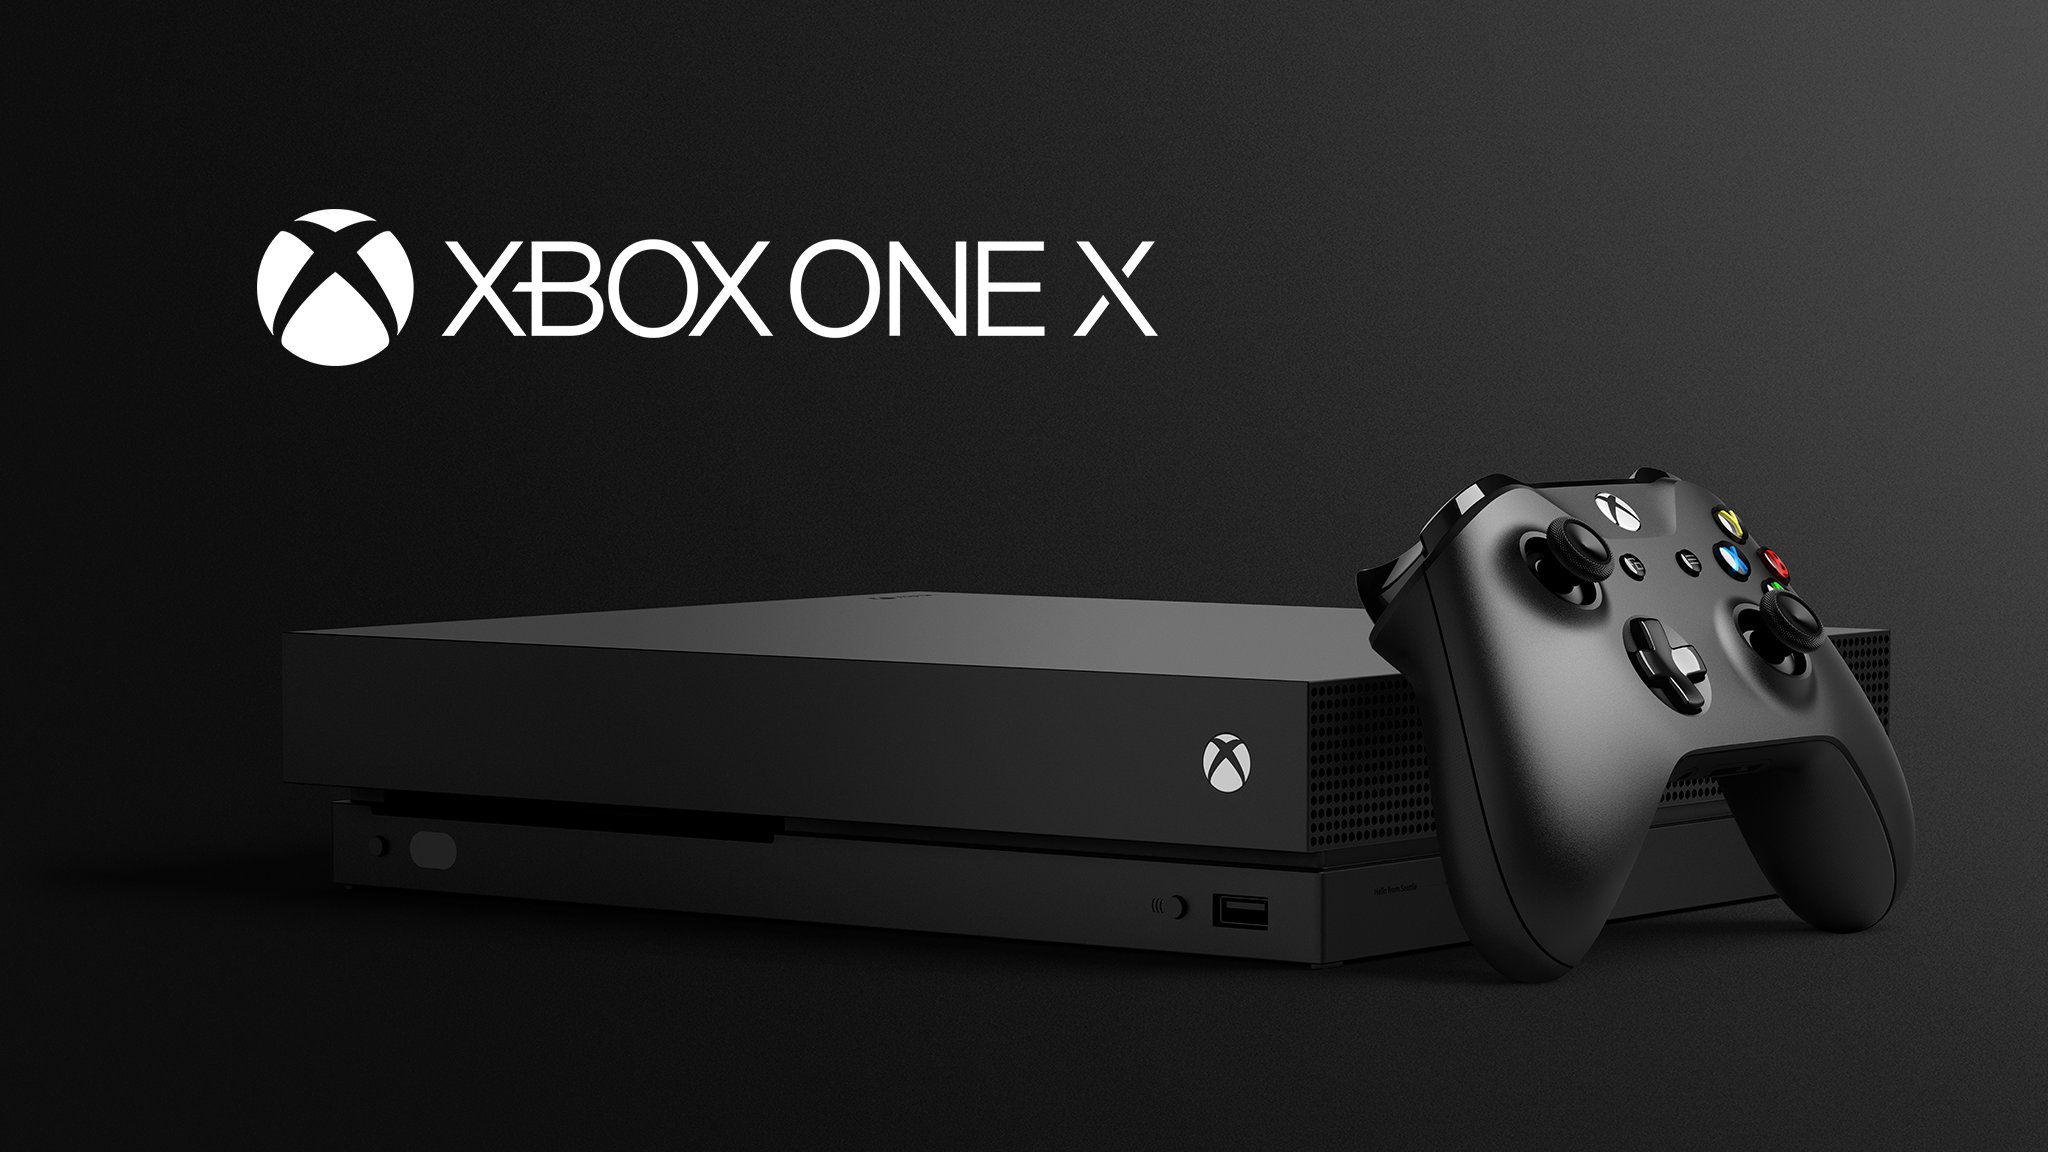 Gamescom Pre órdenes del Xbox One X Project Scorpio Edition están disponibles desde hoy-GamersRD